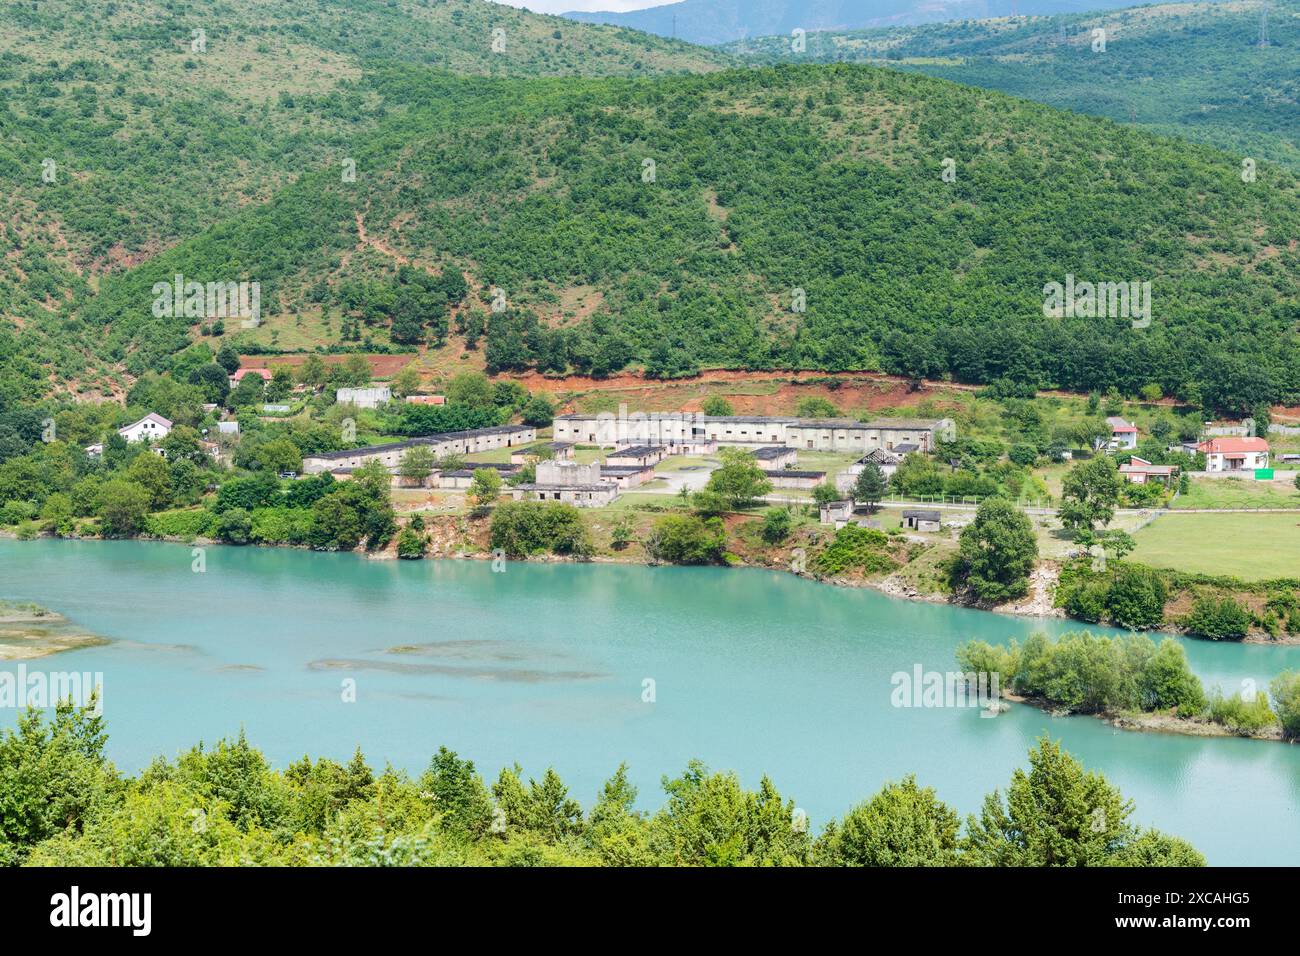 Villaggio vicino al lago Komoni nella campagna albanese settentrionale Foto Stock